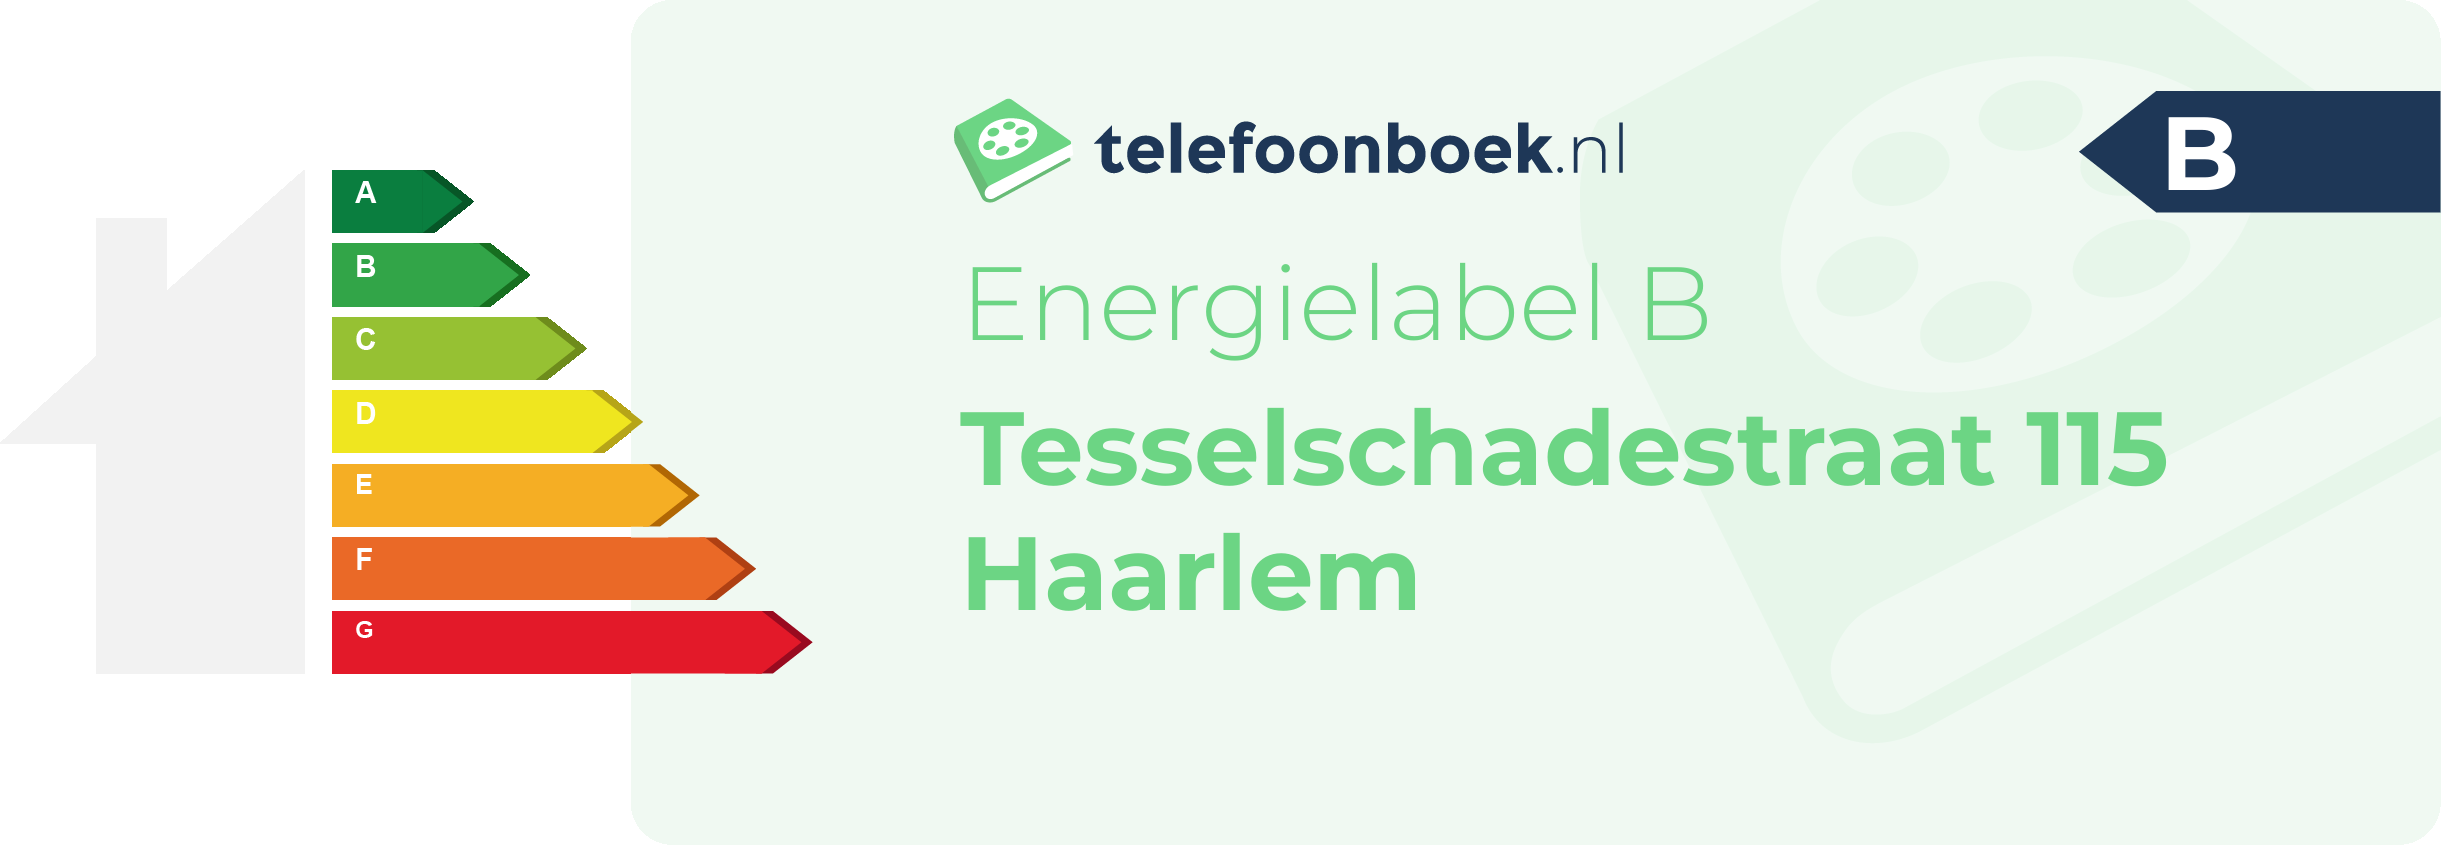 Energielabel Tesselschadestraat 115 Haarlem